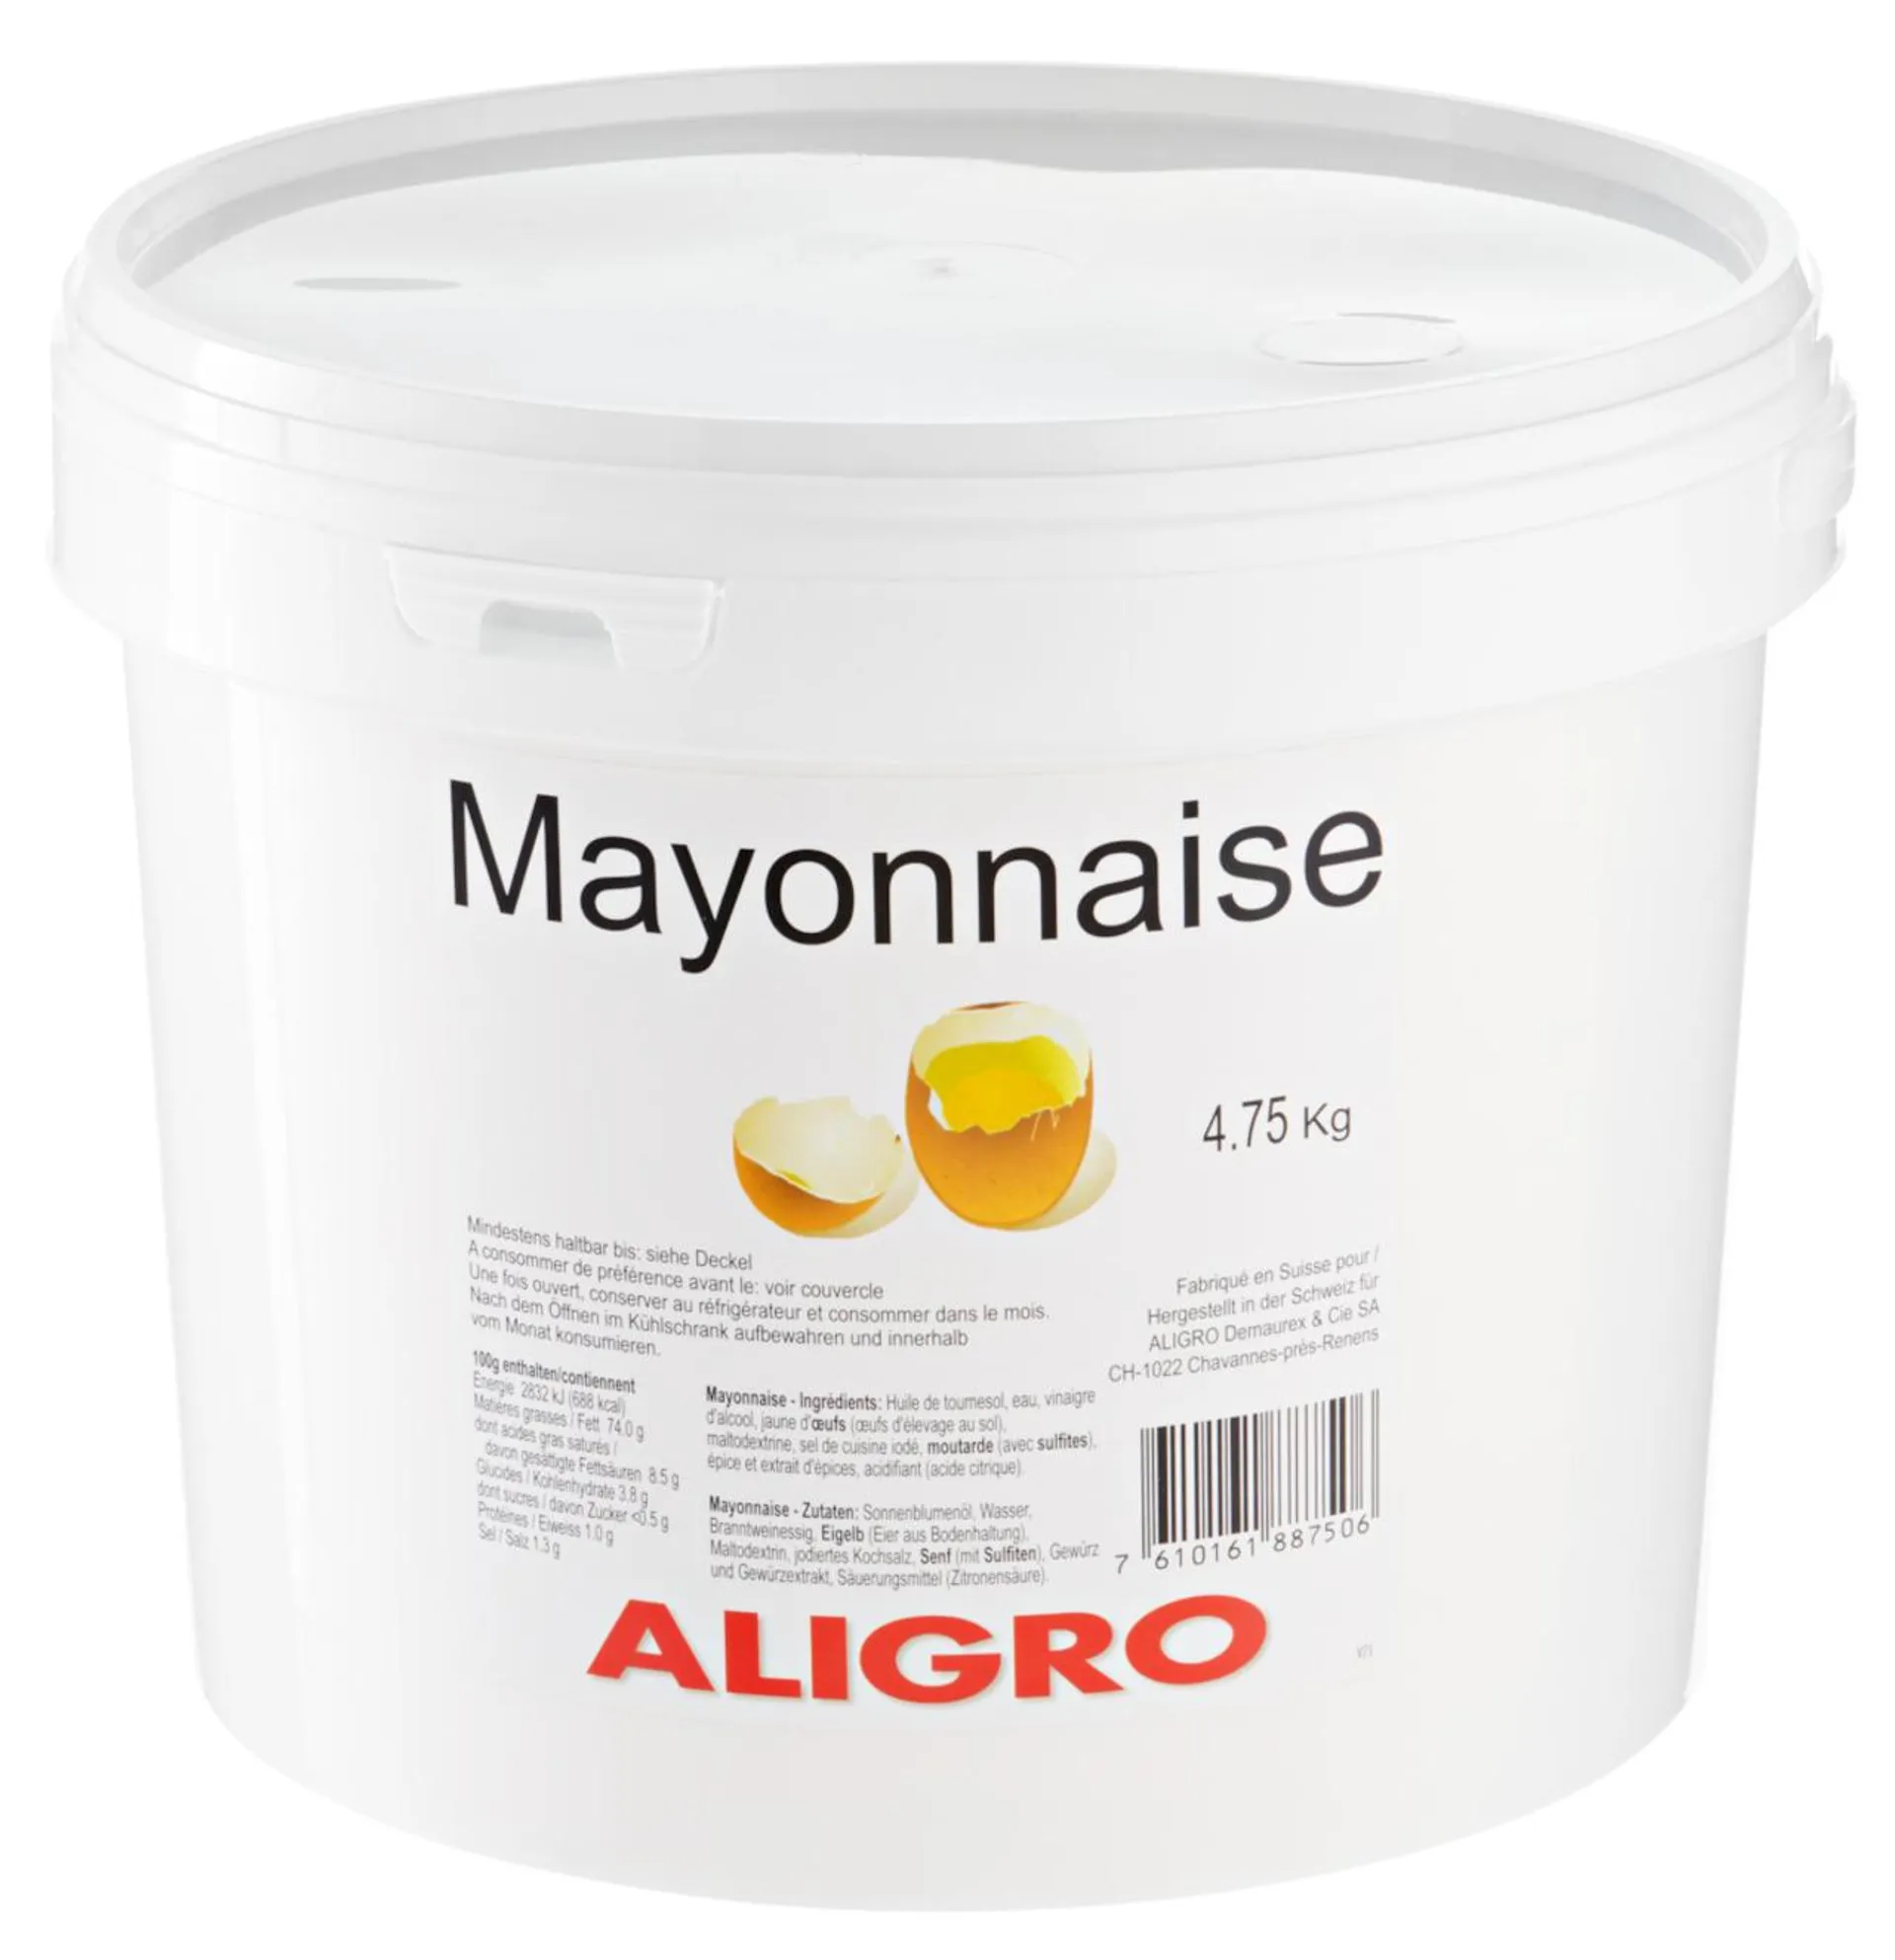 Aligro Mayonnaise